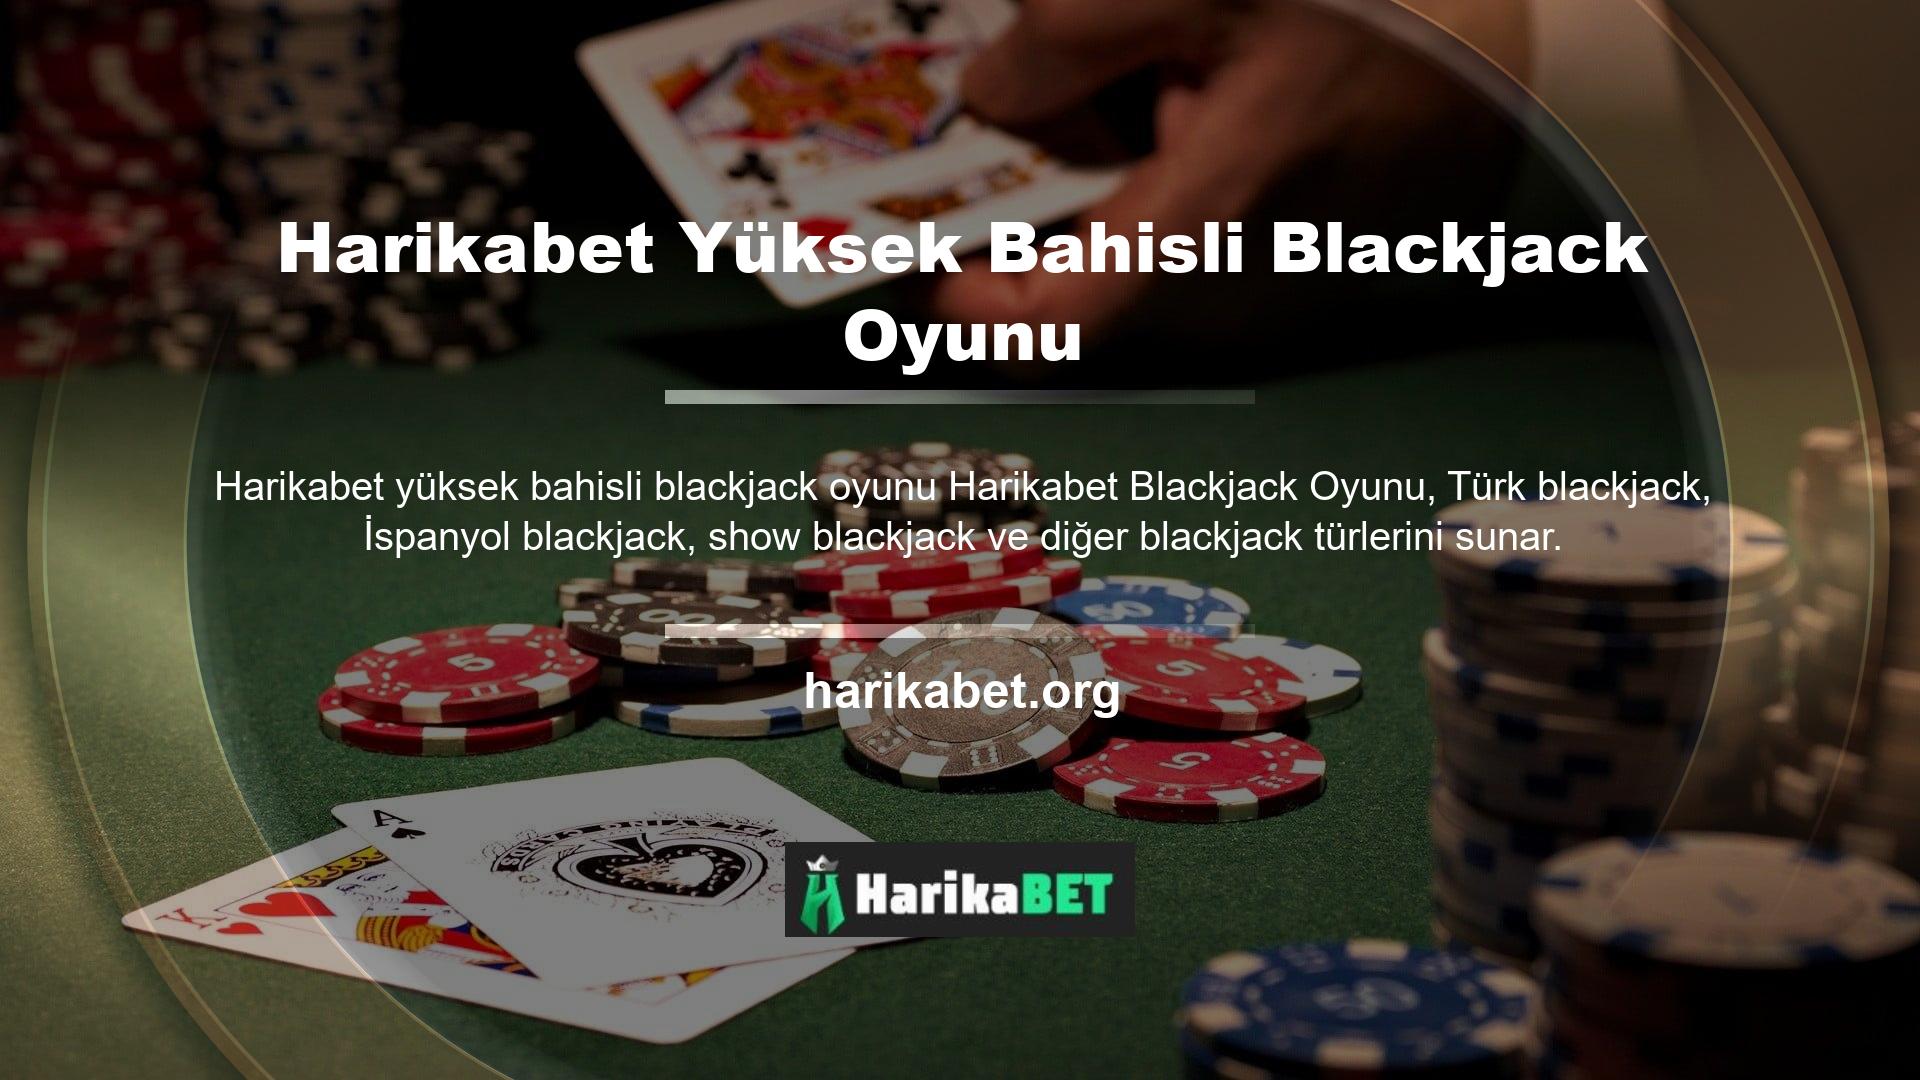 Oyunun kuralları blackjack türüne göre değişir, ancak Harikabet web sitesinde sunulan bahis boyutları aynı kalır